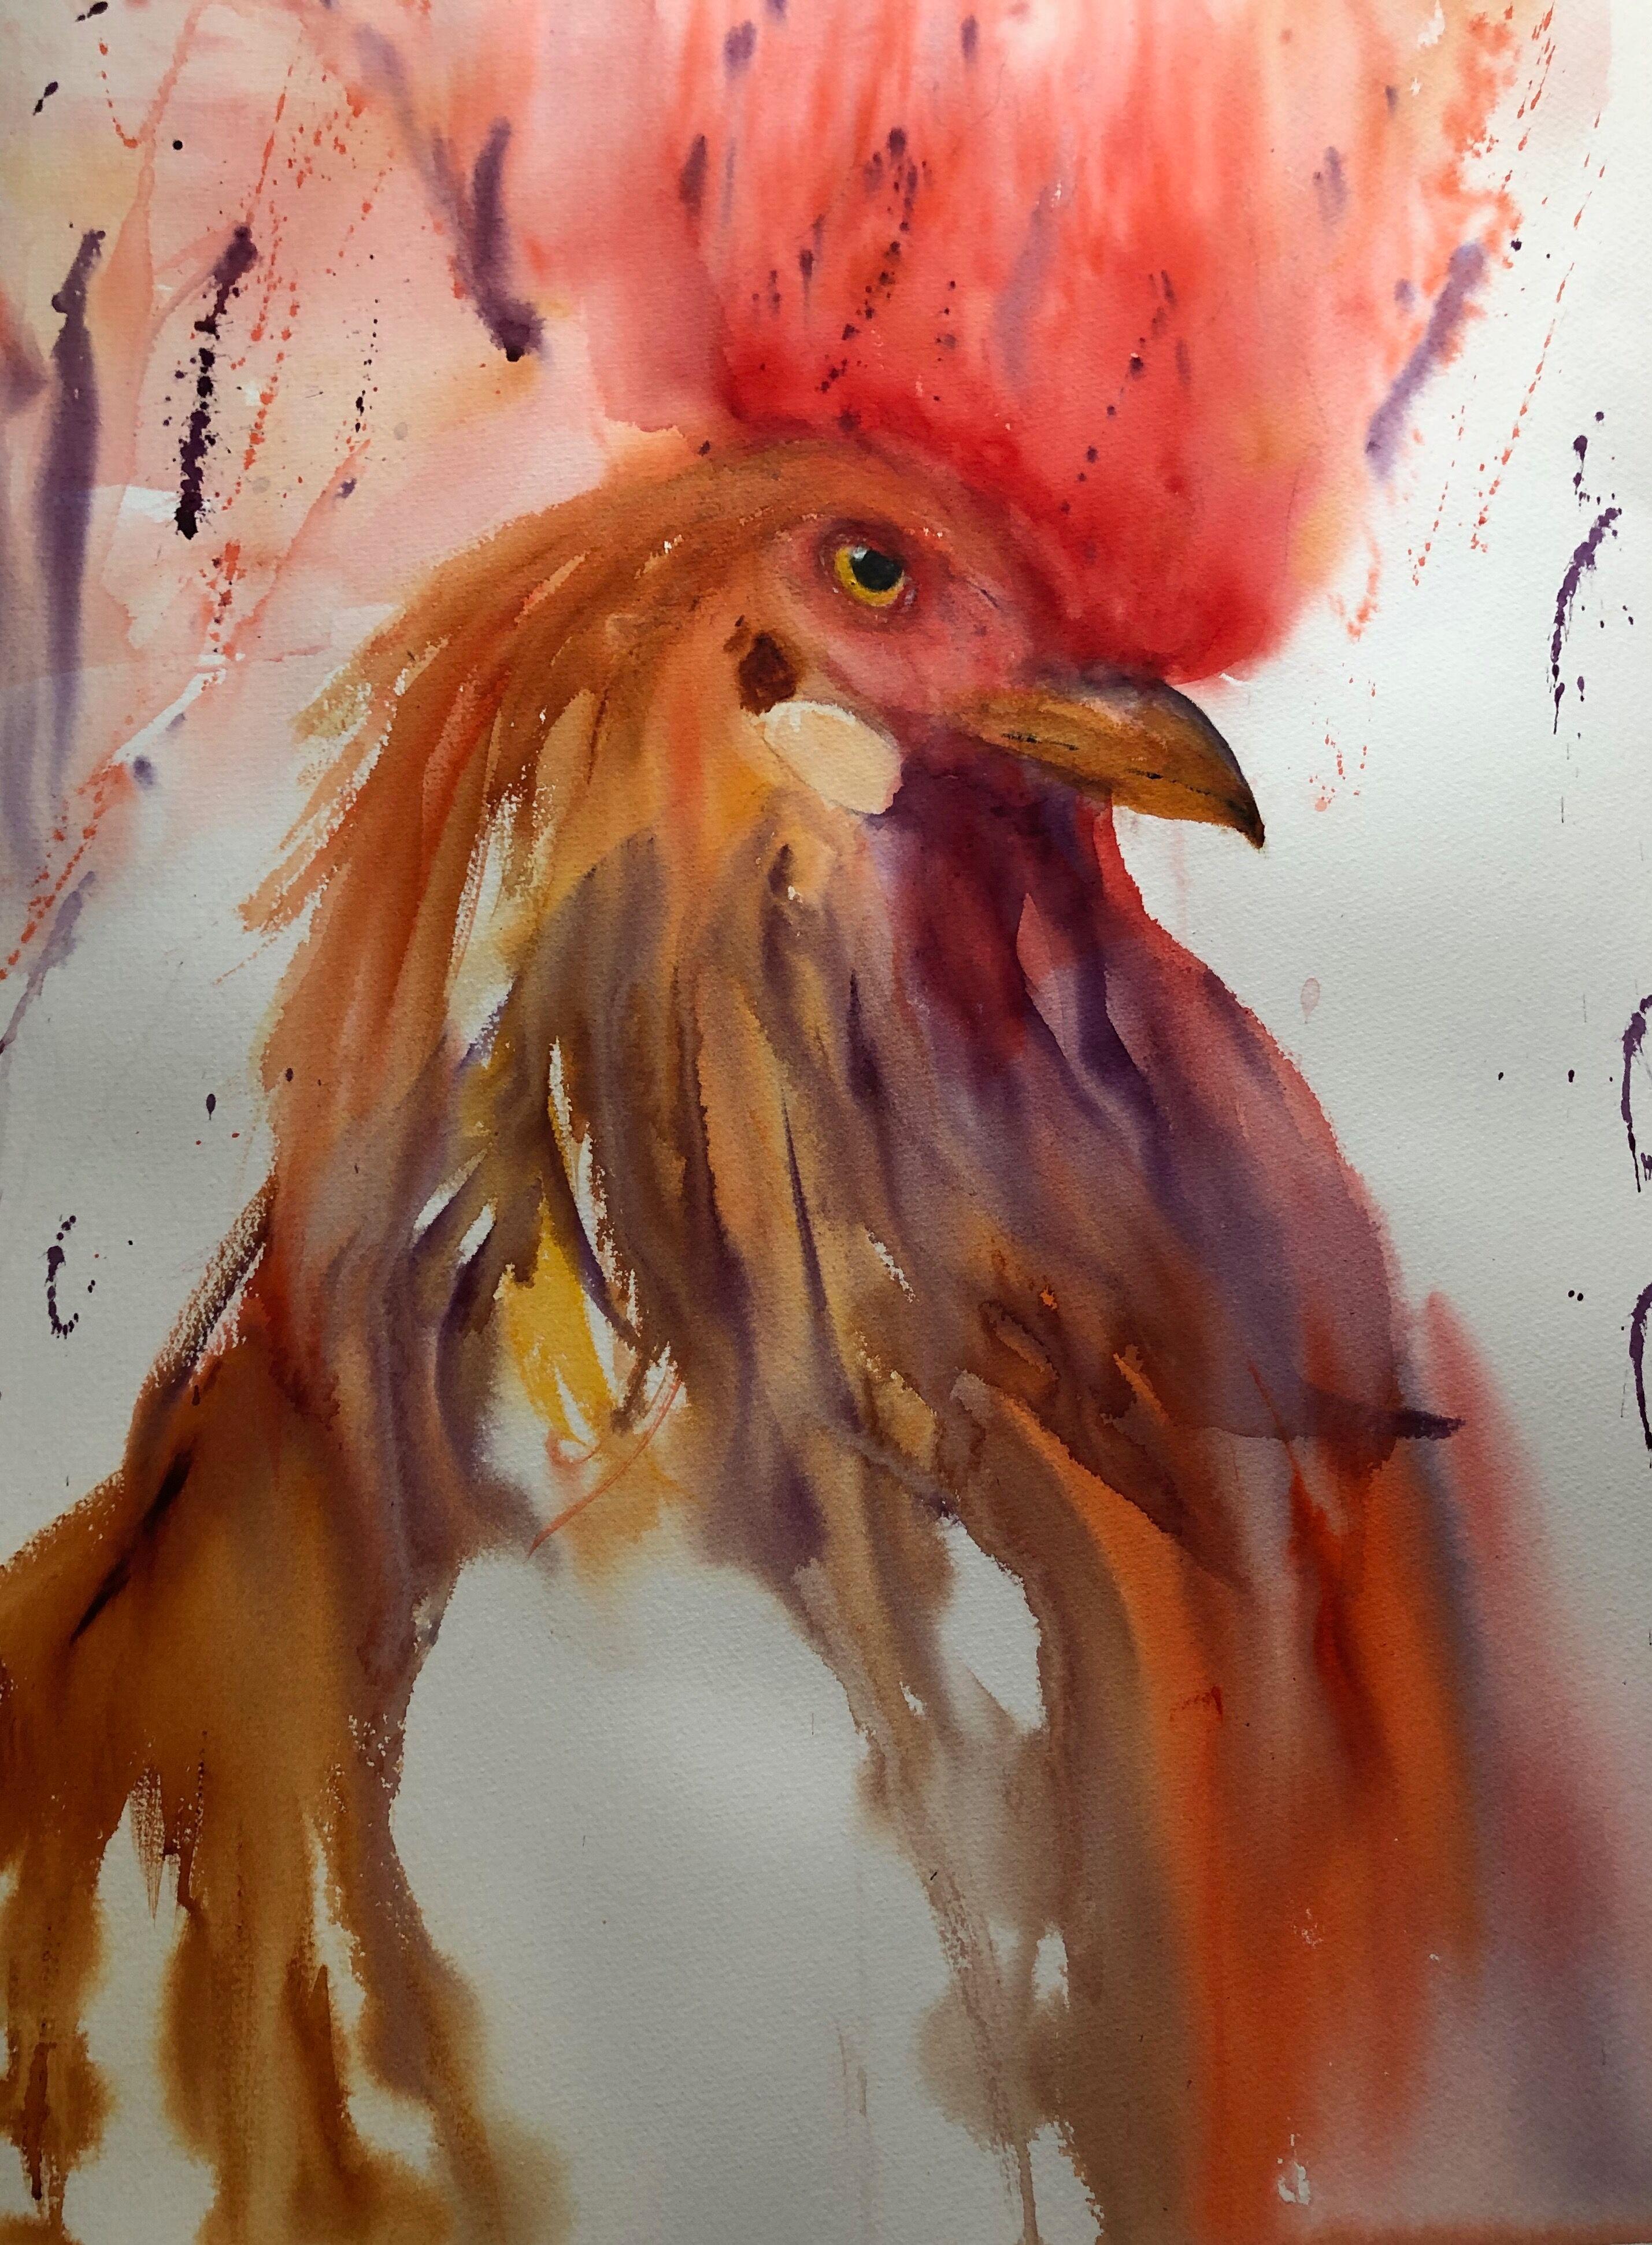 "Cocksure" ist ein Original-Aquarell von Julia Taylor. Dieser Hahn hat einen stolzen Blick. Sein Kamm ist leuchtend rot und eher abstrakt. Seine anderen Federn weisen die typischen goldenen Farbtöne eines Huhns auf. 

Bild: 30 x 22 Zoll
Gerahmt: